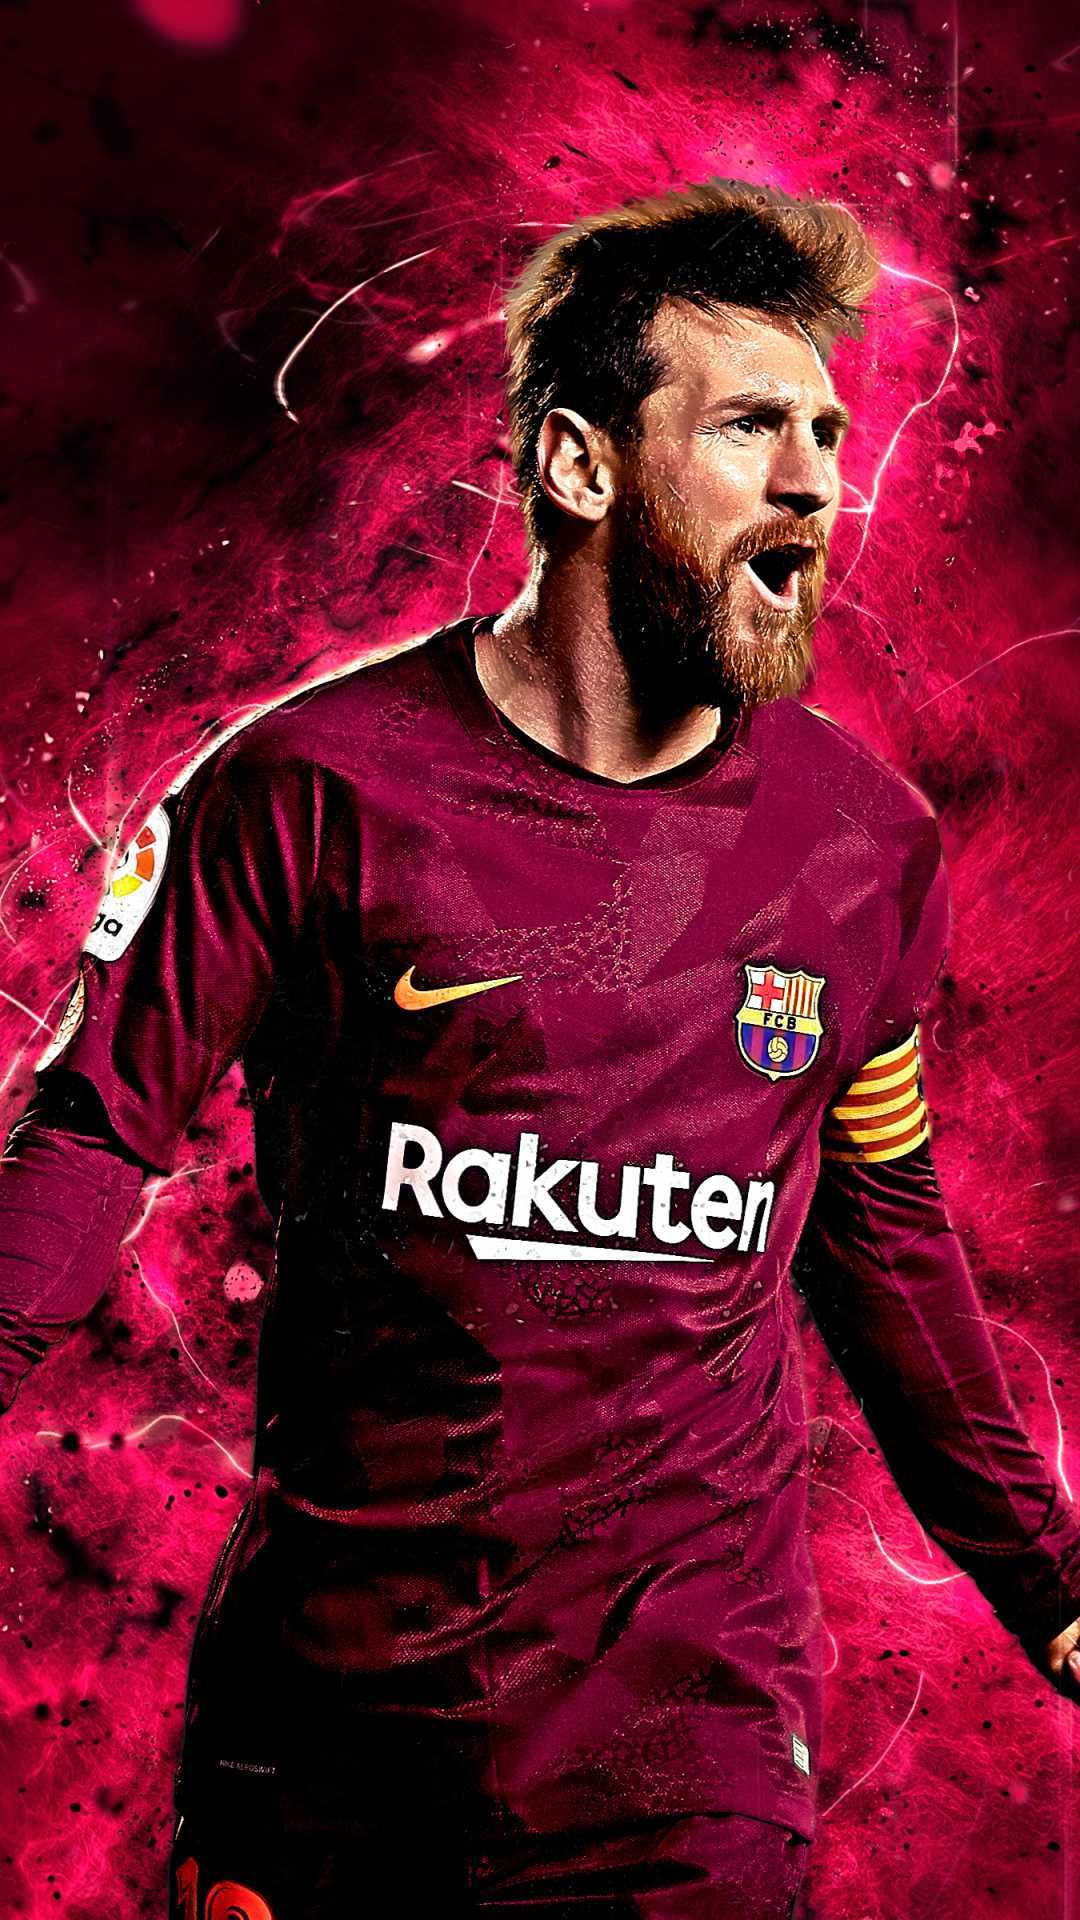 Hình nền Messi tuyệt đẹp, đầy tính nghệ thuật sẽ hướng dẫn bạn vào thế giới bóng đá thần thoại. Với chất lượng hình ảnh đẹp mắt và màu sắc phong phú, bạn chắc chắn sẽ cảm thấy tuyệt vời khi đón nhận màn hình của mình.